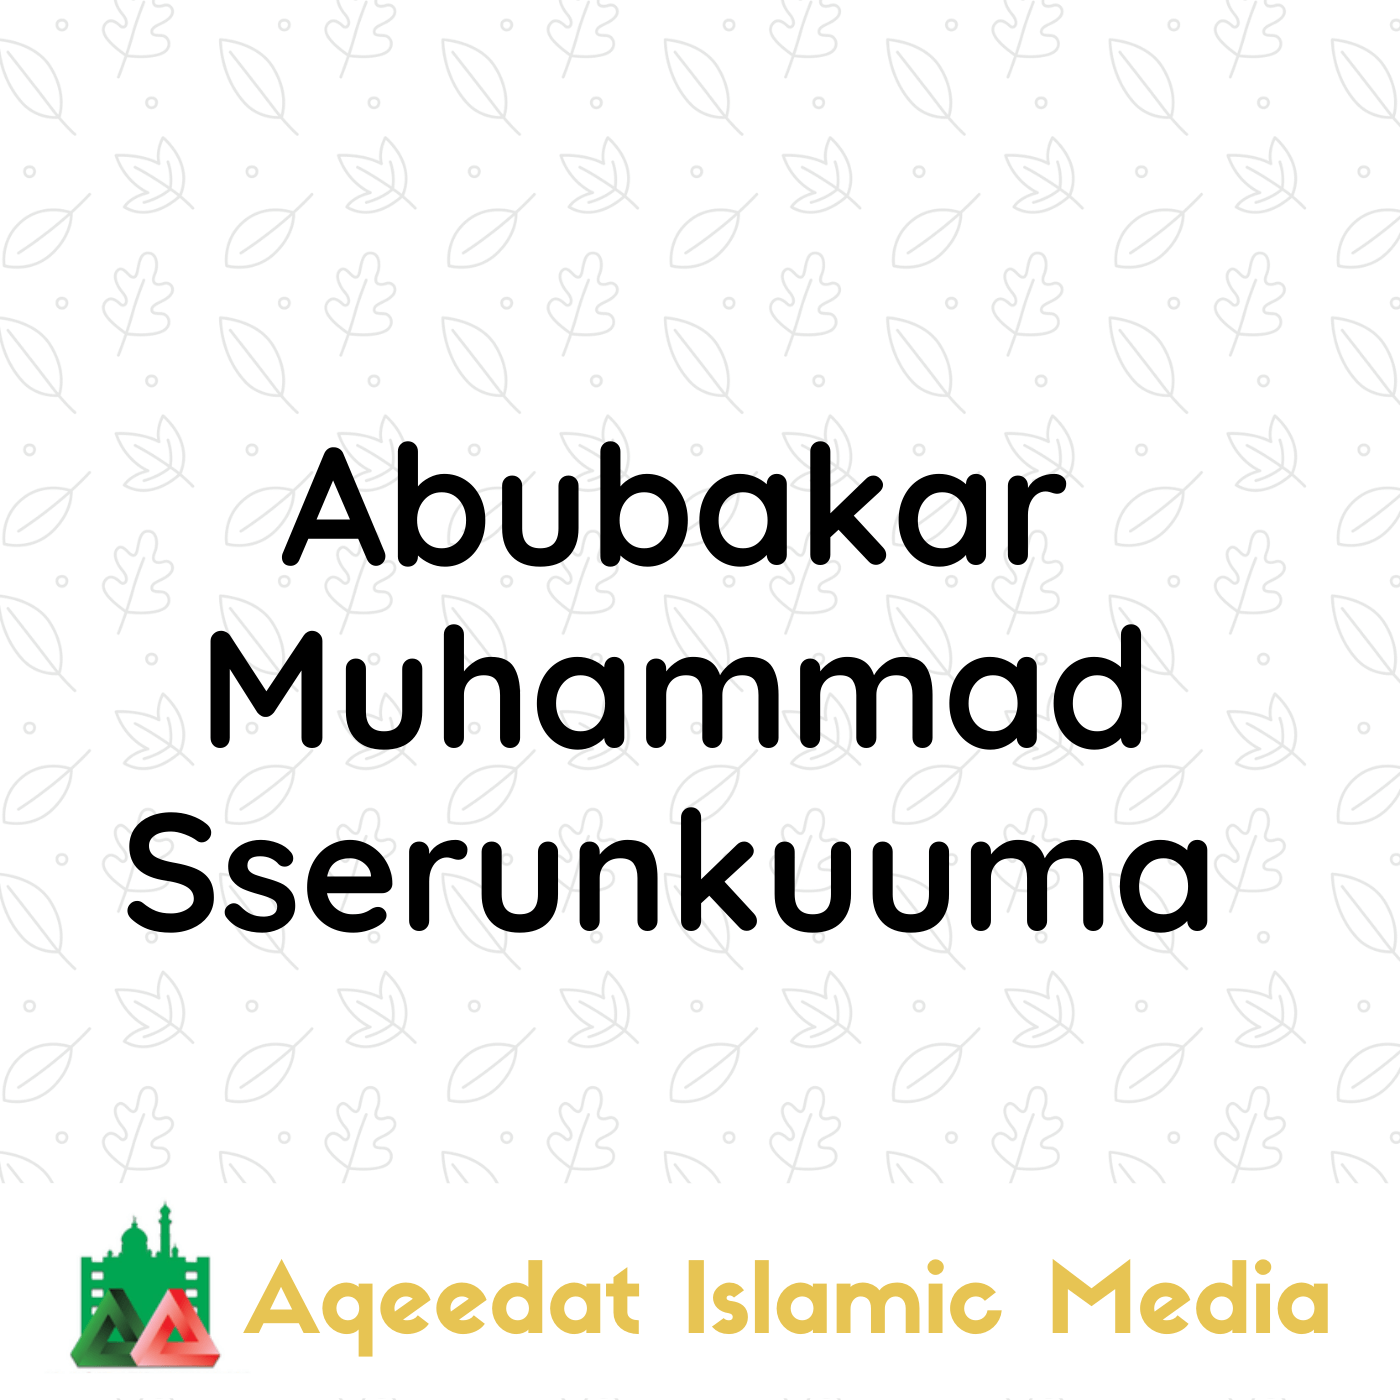  Abubakar Muhammad Sserunkuuma